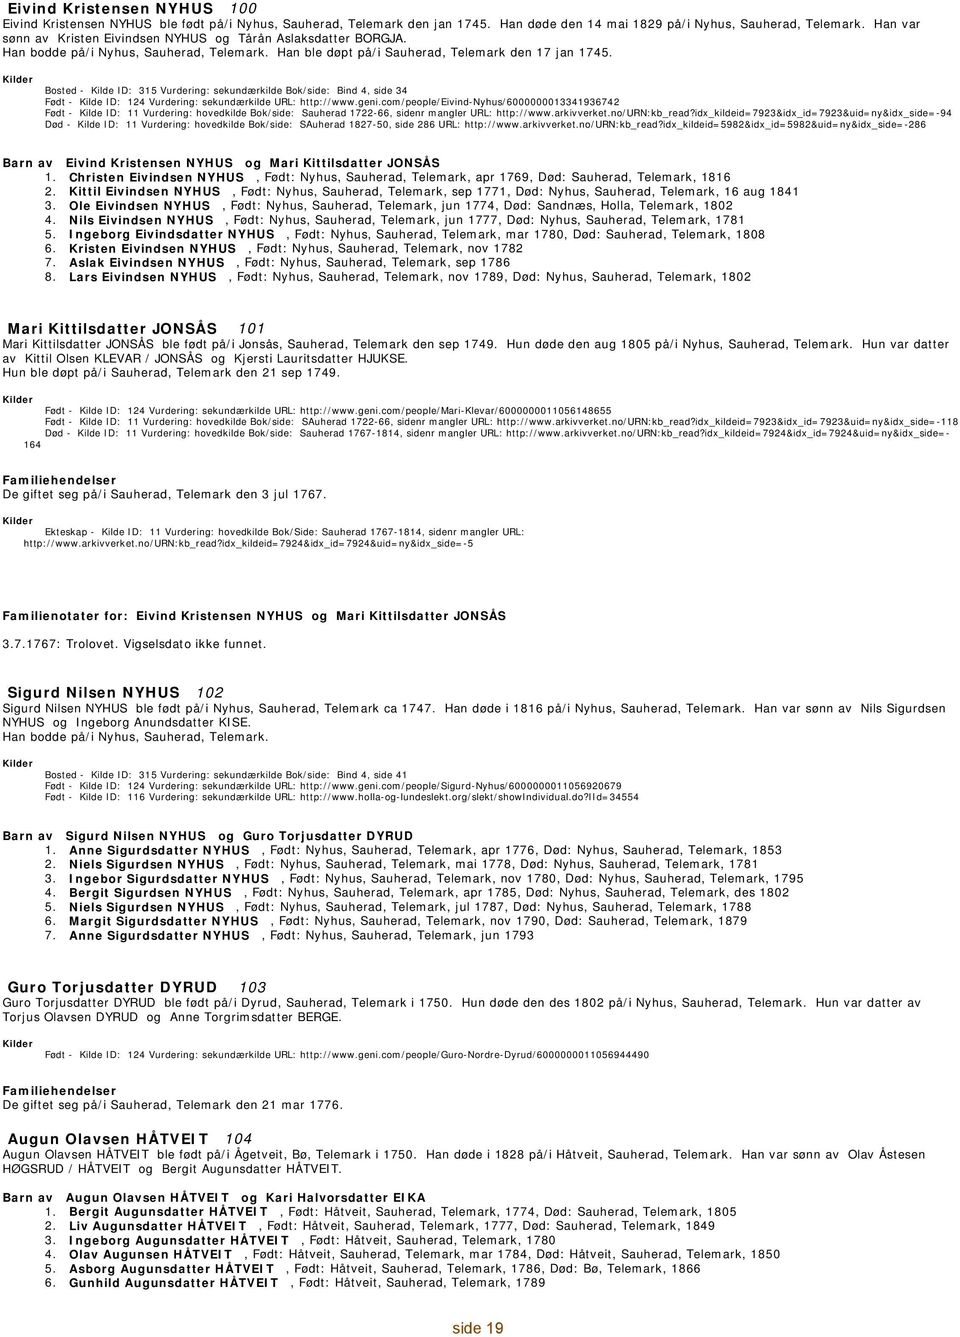 Bosted - 315 Vurdering: sekundærkilde Bok/side: Bind 4, side 34-124 Vurdering: sekundærkilde URL: http://www.geni.